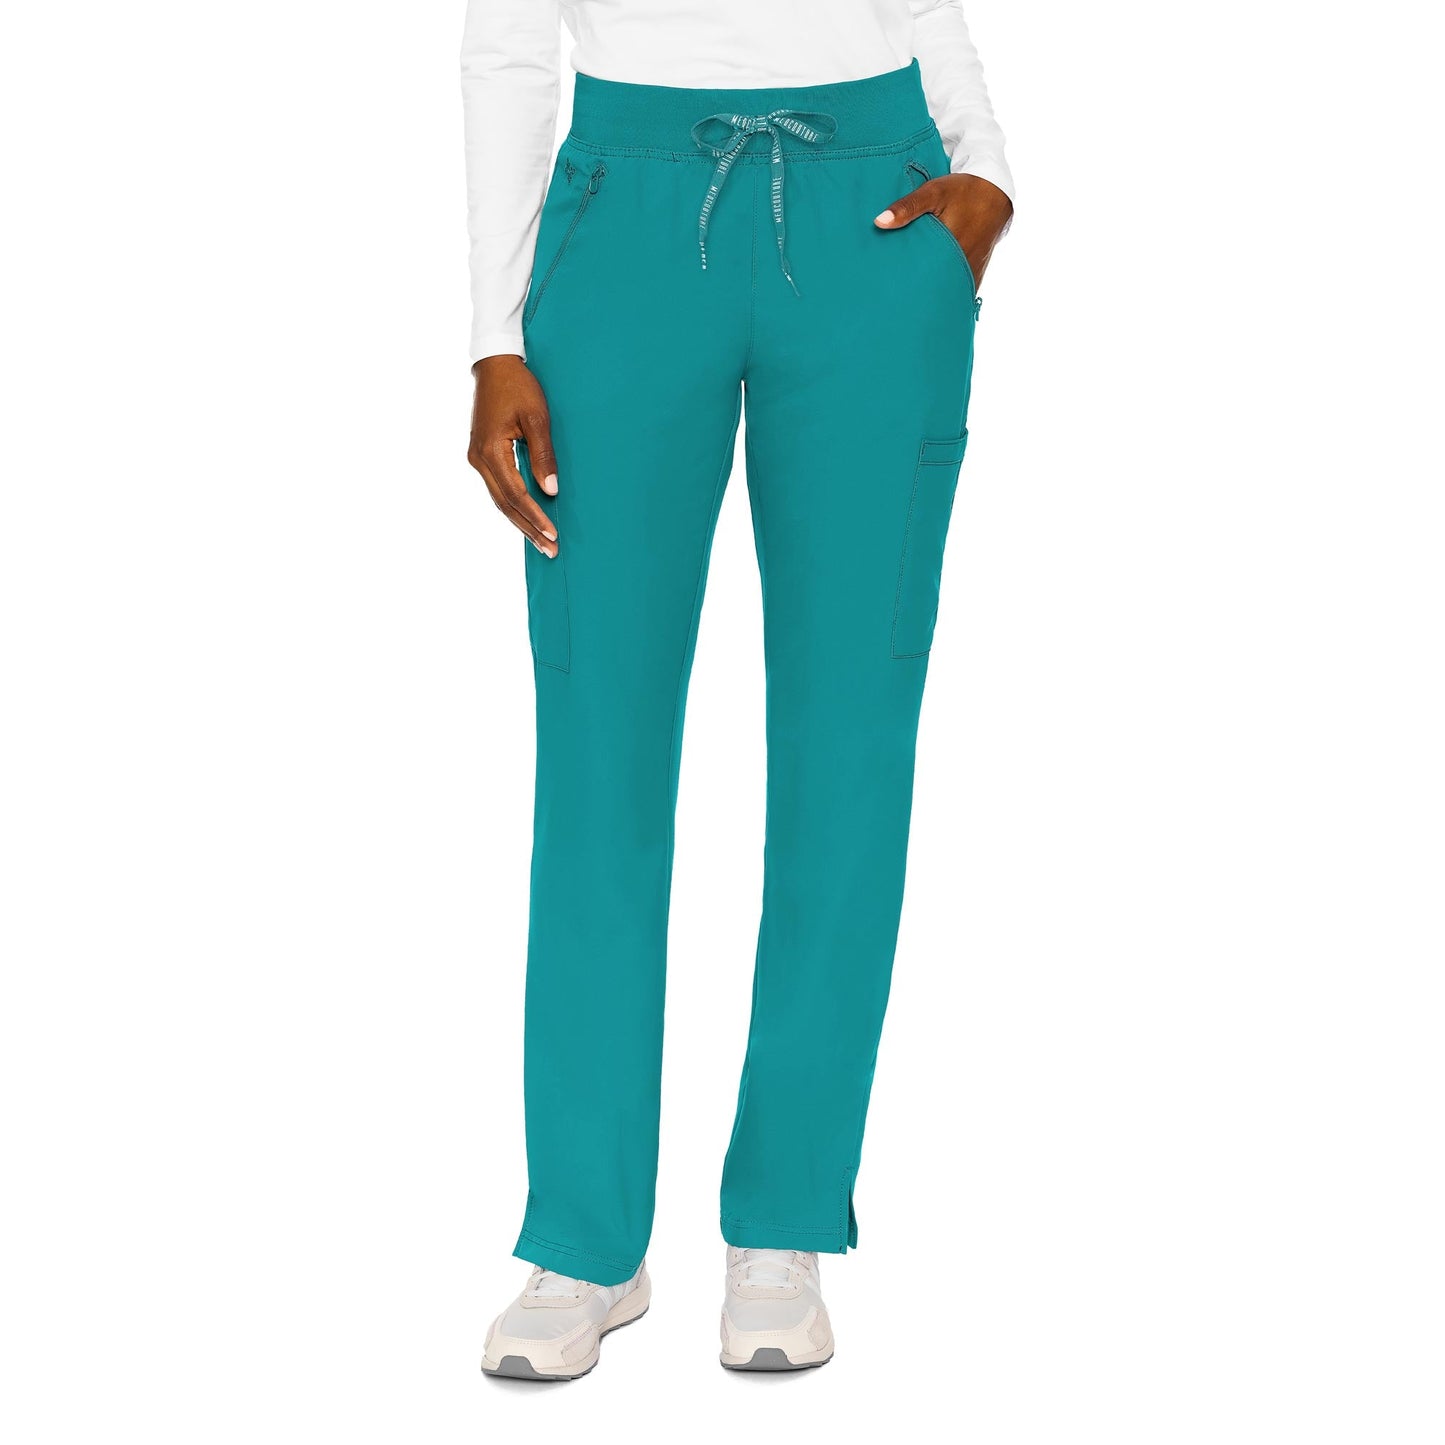 Med Couture Insight Zipper Pant Regular Length (XXS-XL)